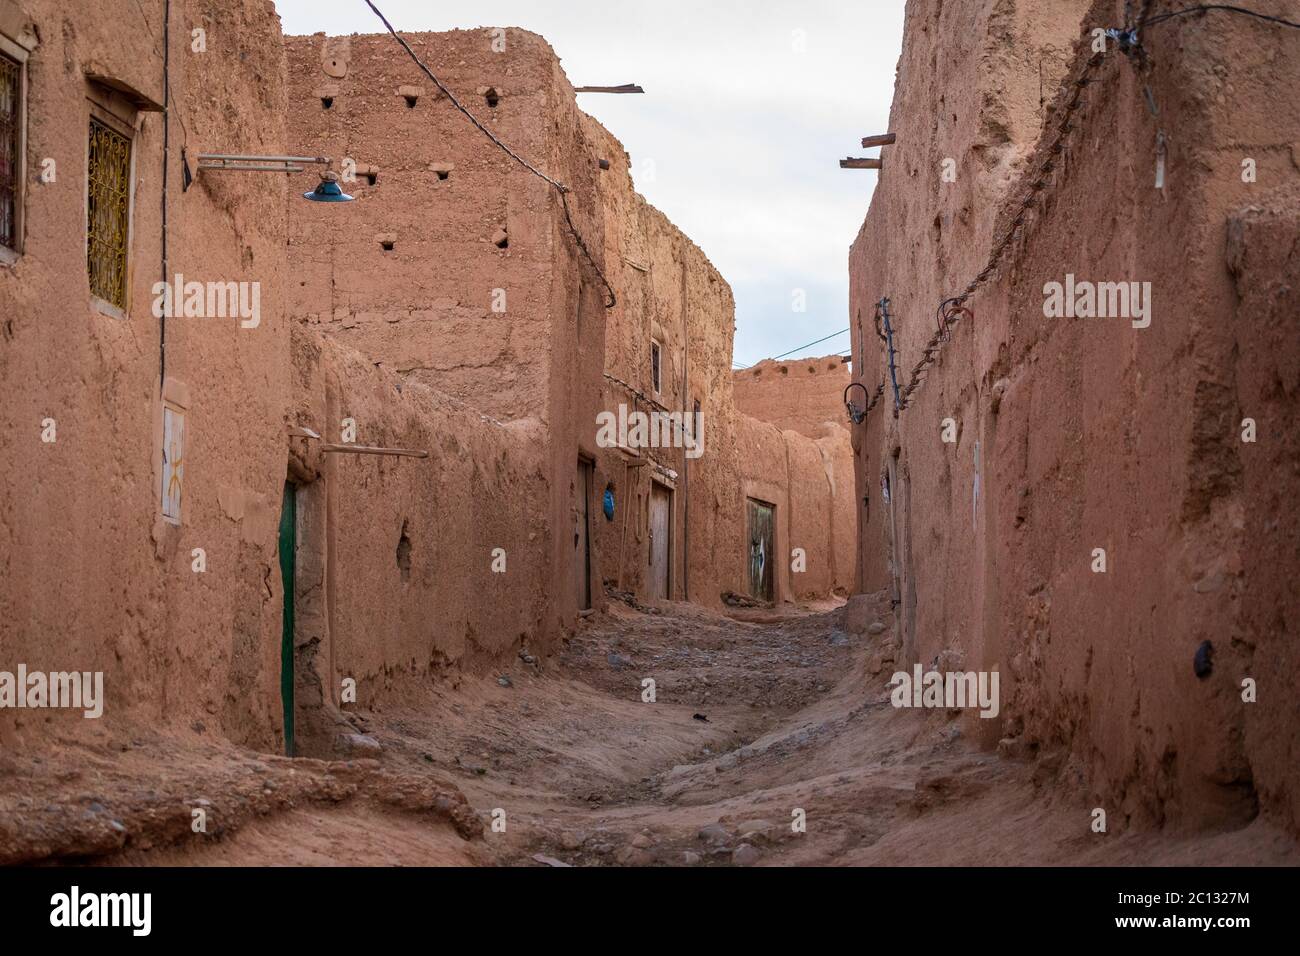 Une rue vide avec des murs de briques de boue dans un simple village berbère dans la province de midelt, au maroc Banque D'Images